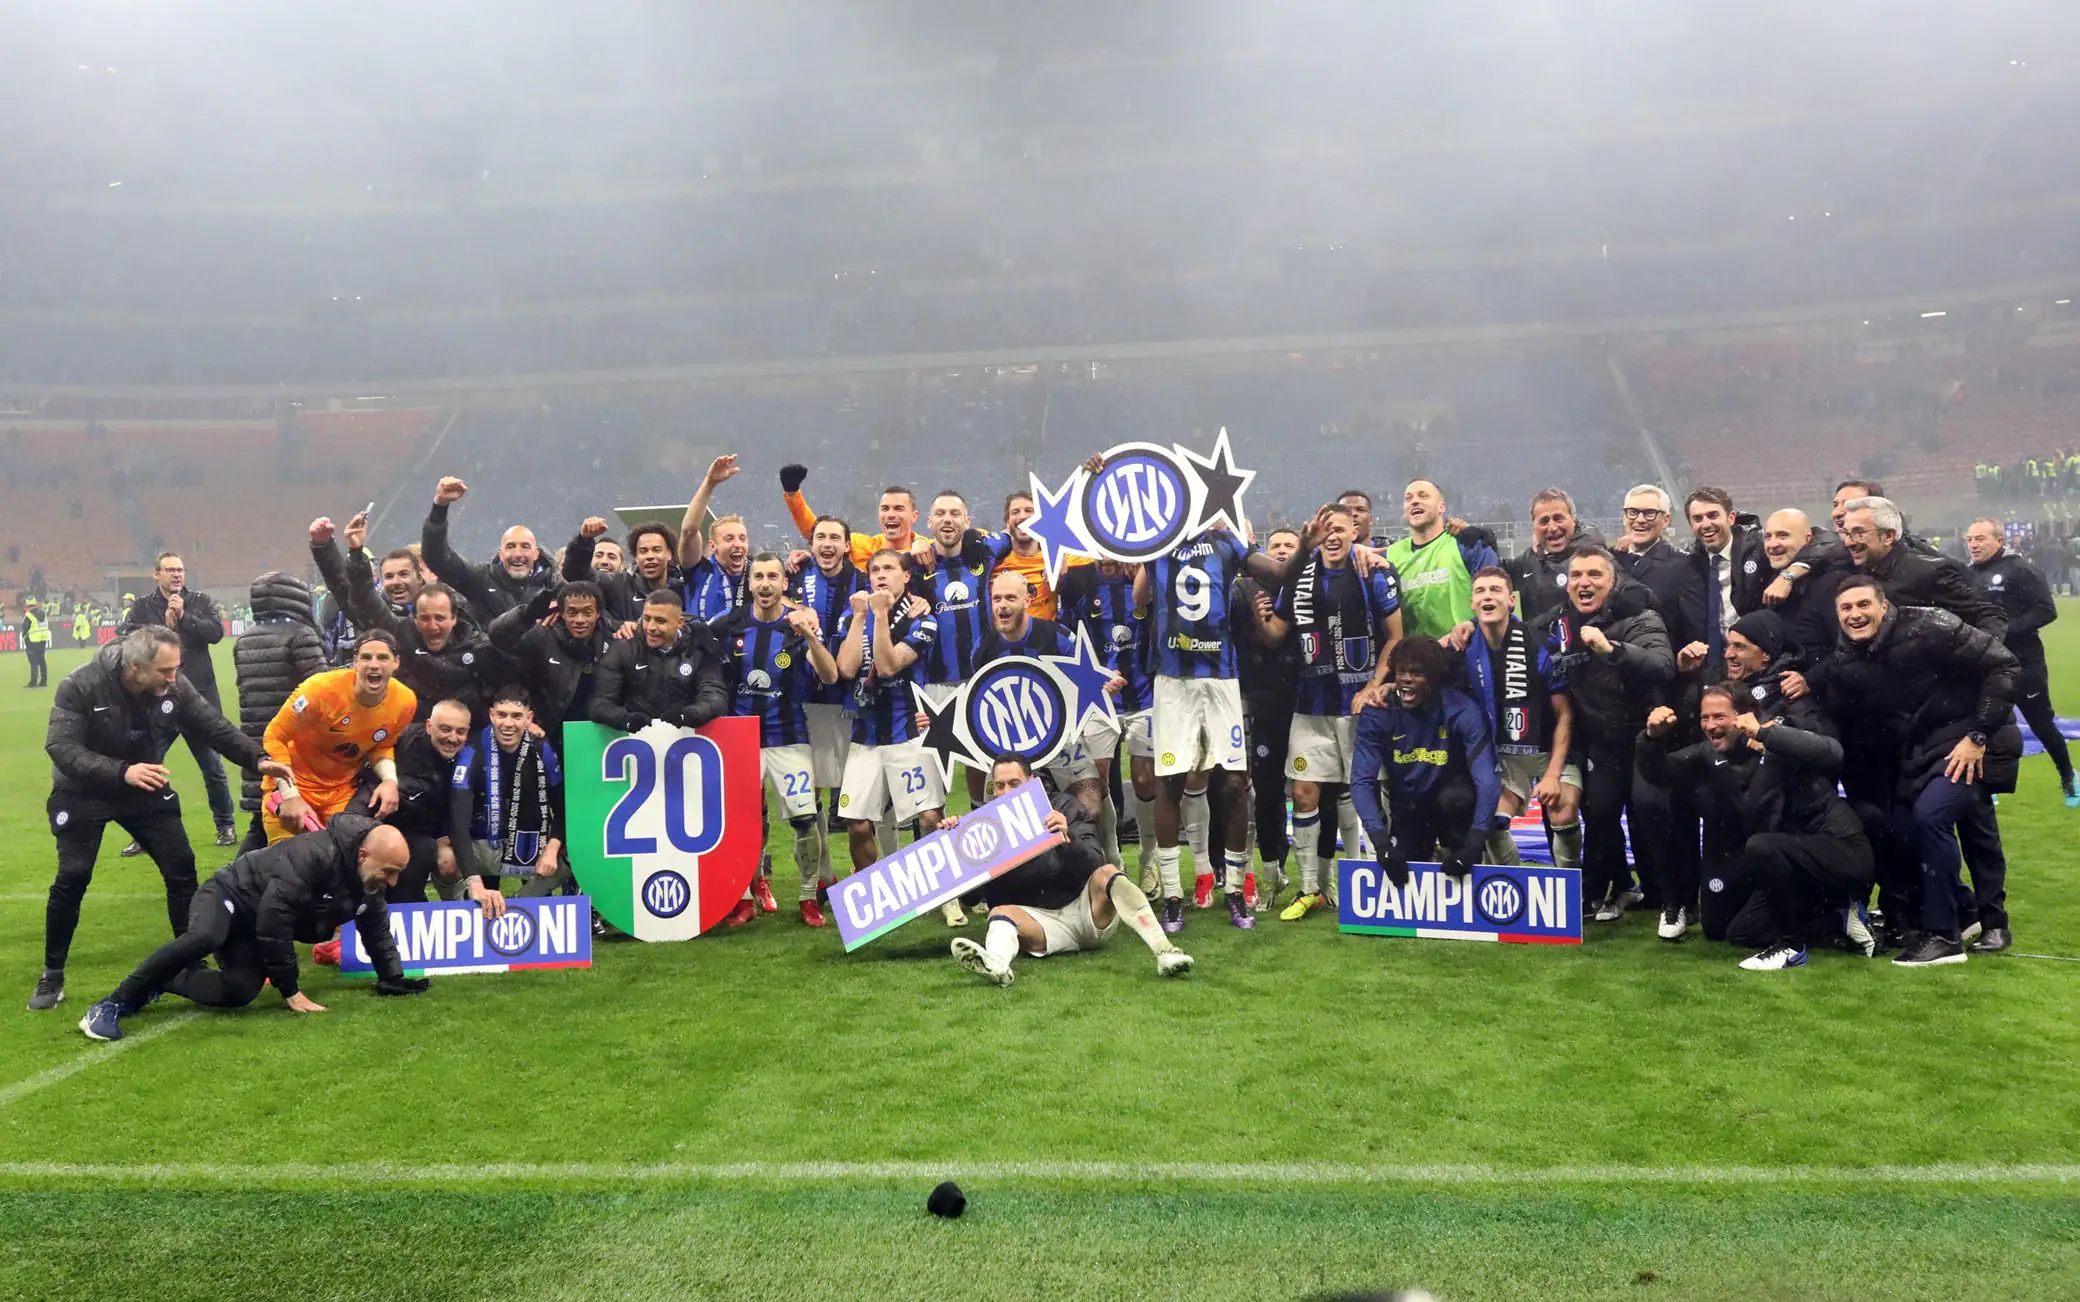 L'Inter è Campione d'Italia, i nerazzurri vincono il 20esimo Scudetto della loro storia nel derby contro il Milan